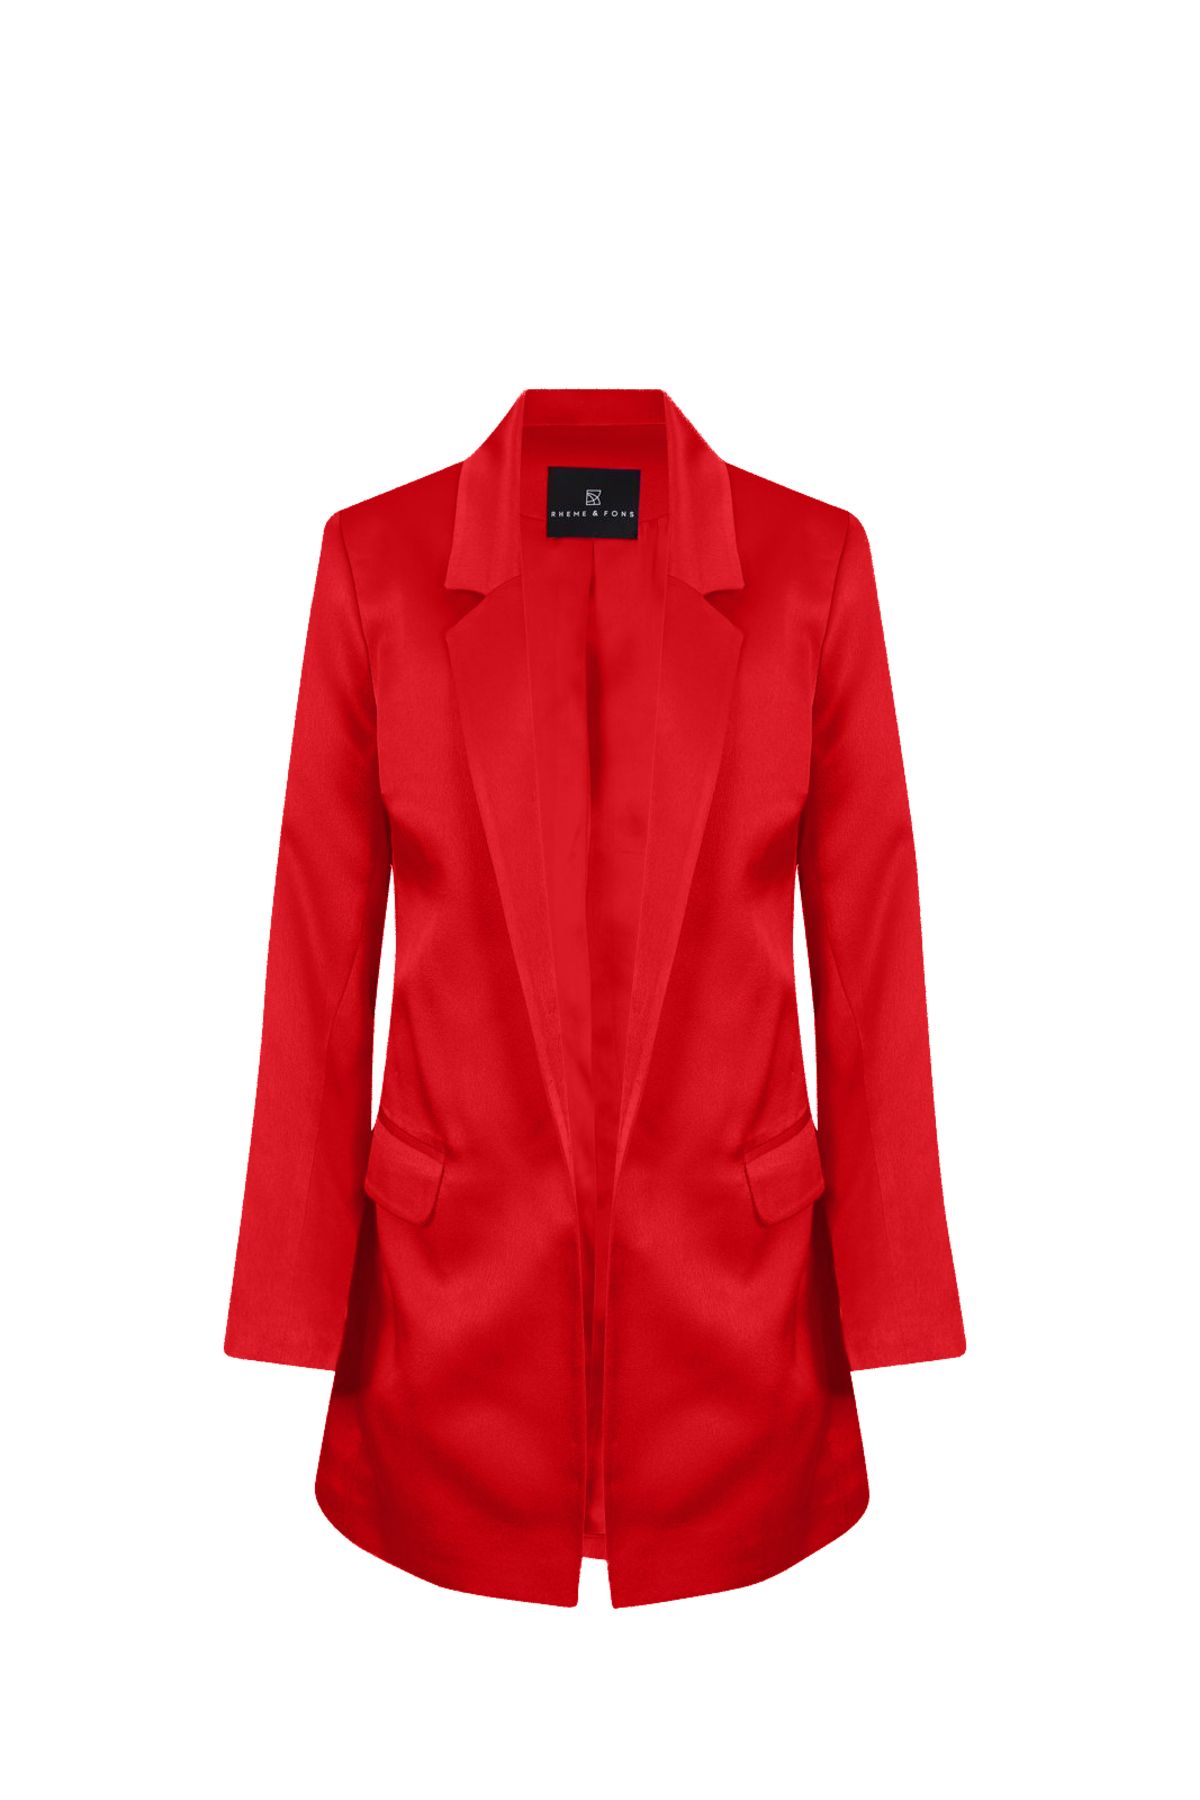 Rheme And Fons Özel Tasarım Couture El Işçiliği Kırmızı Kadın Blazer Ceket